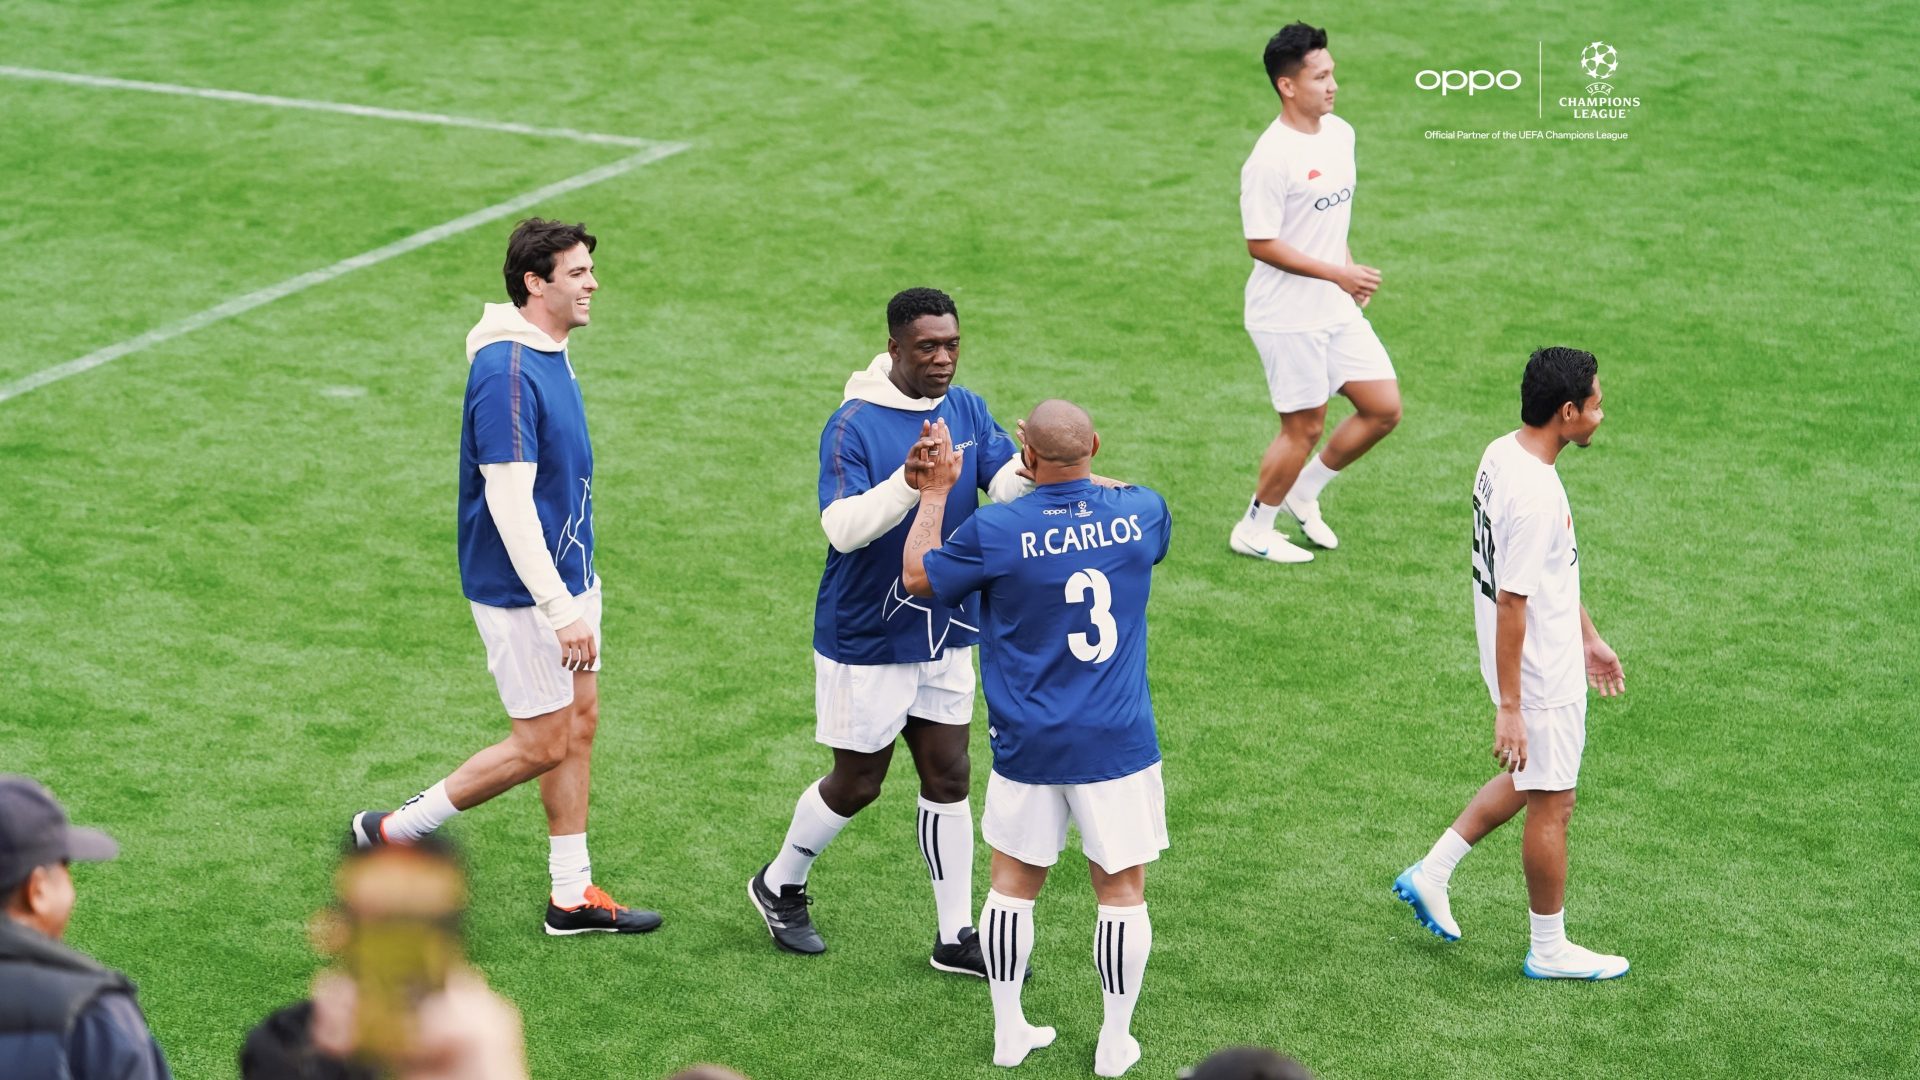 Efsane Futbolcular Londra’da OPPO’nun Yardım Maçında Buluştu